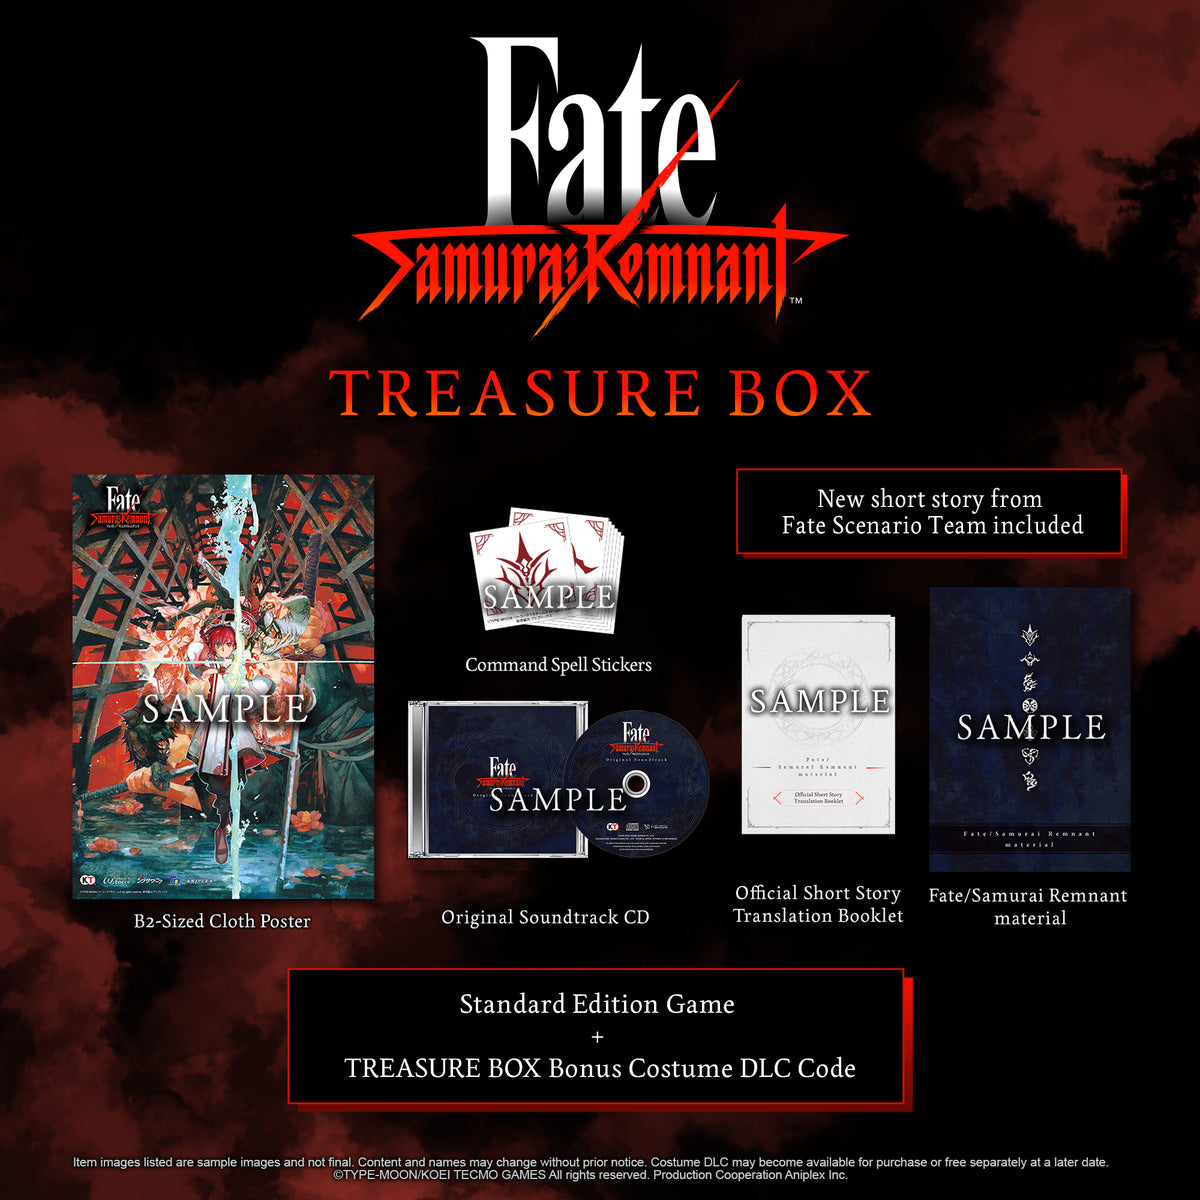 6,885円PS4 Fate/Samurai Remnant TREASURE BOX